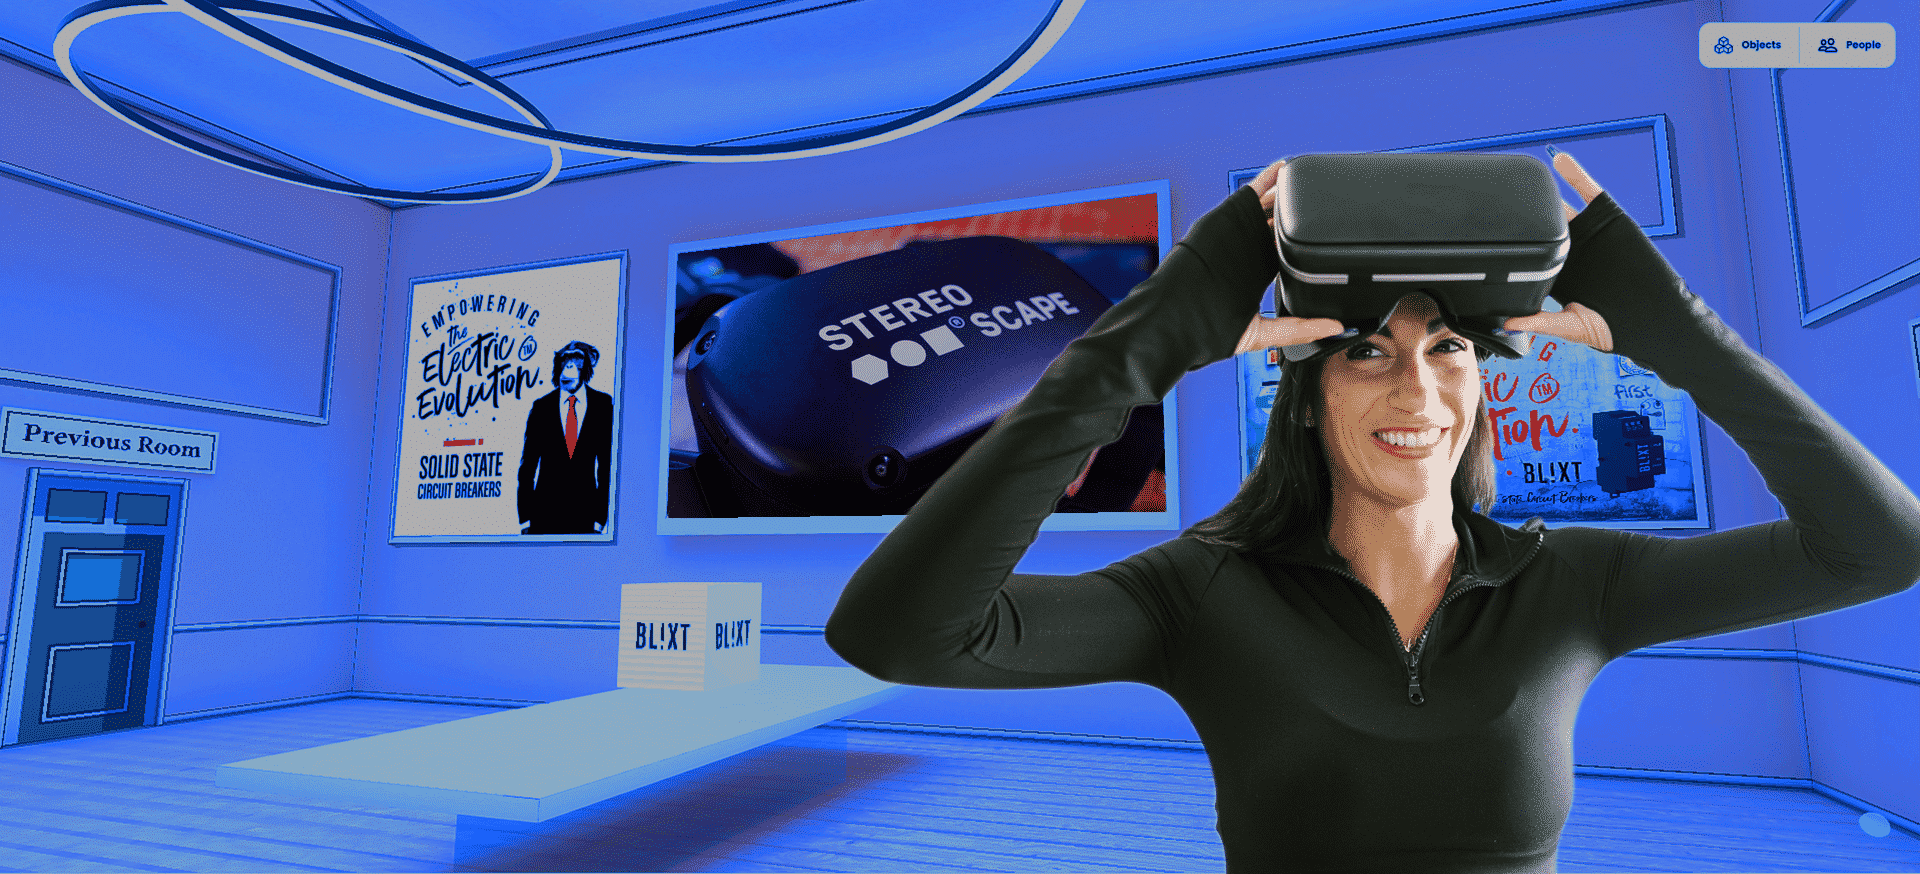 Ihminen VR-lasit päässä metaversumissa, jossa on mainoksia.